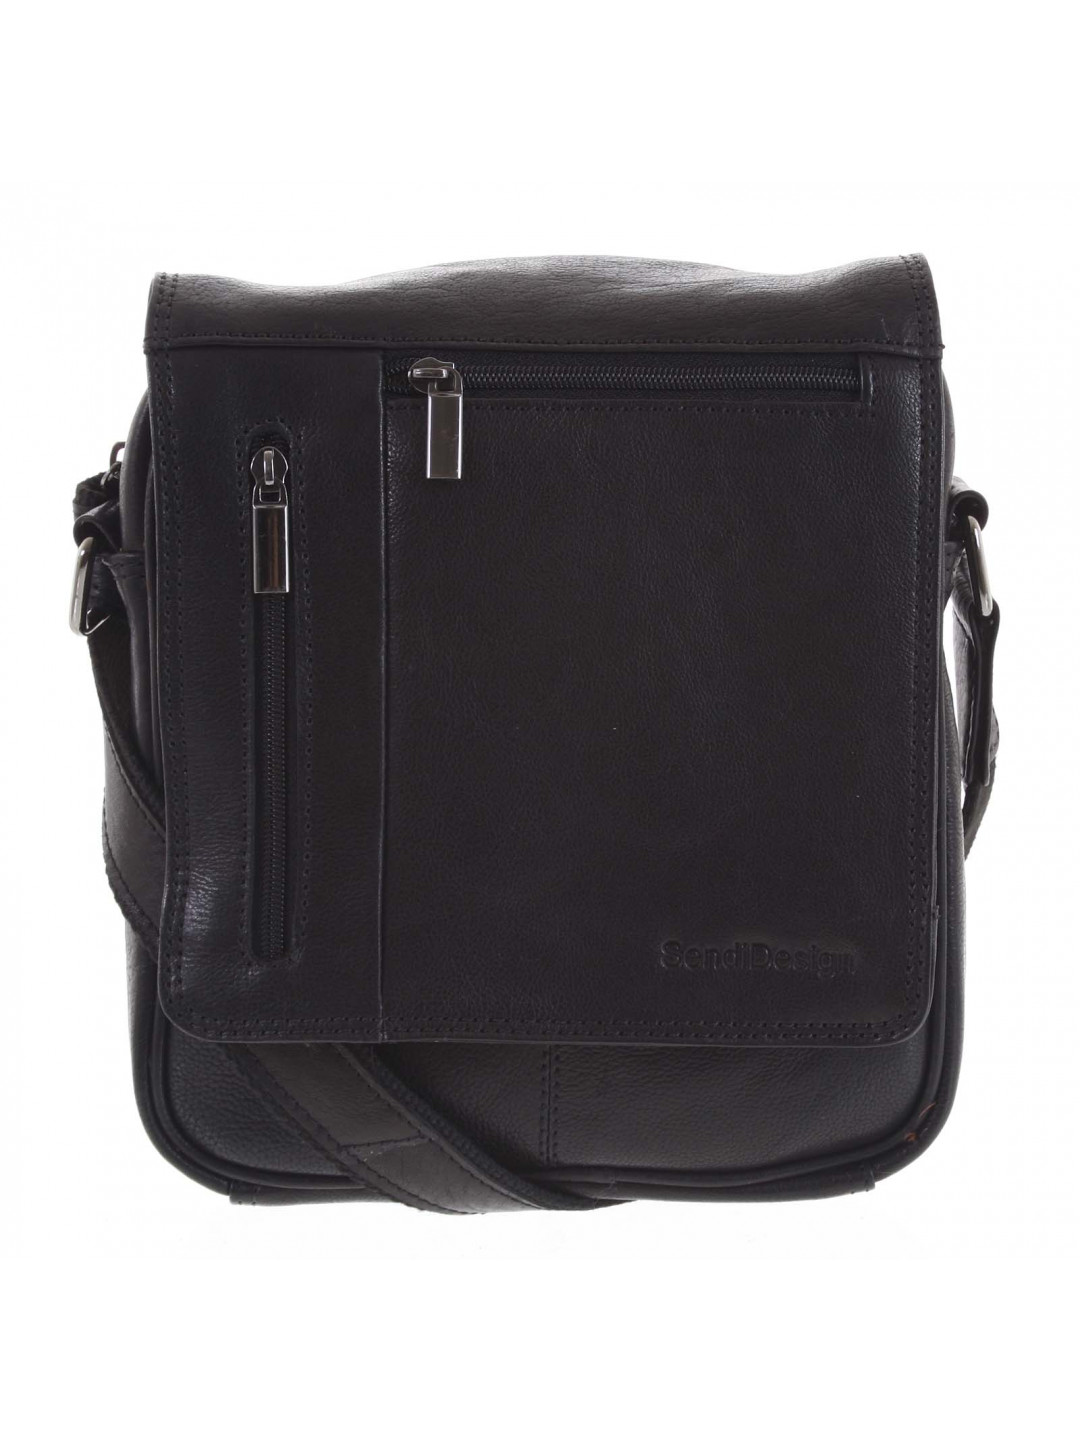 Pánská kožená taška přes rameno černá – SendiDesign Thoreau